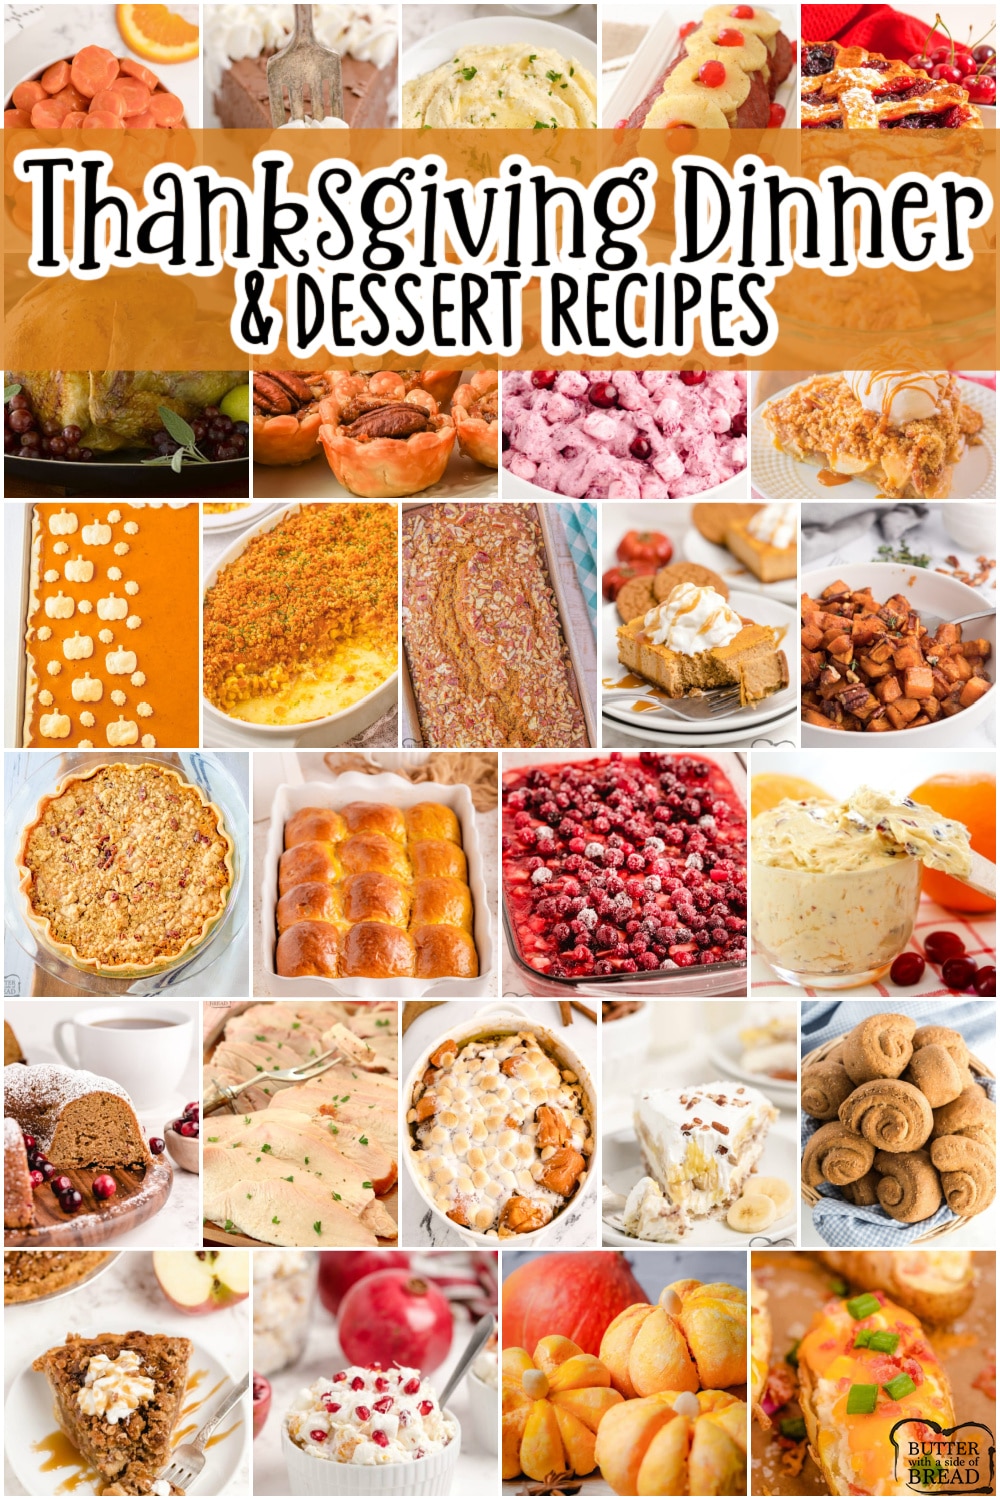 https://butterwithasideofbread.com/wp-content/uploads/2022/11/Thanksgiving-Dinner-Dessert-Recipes-copy.jpg